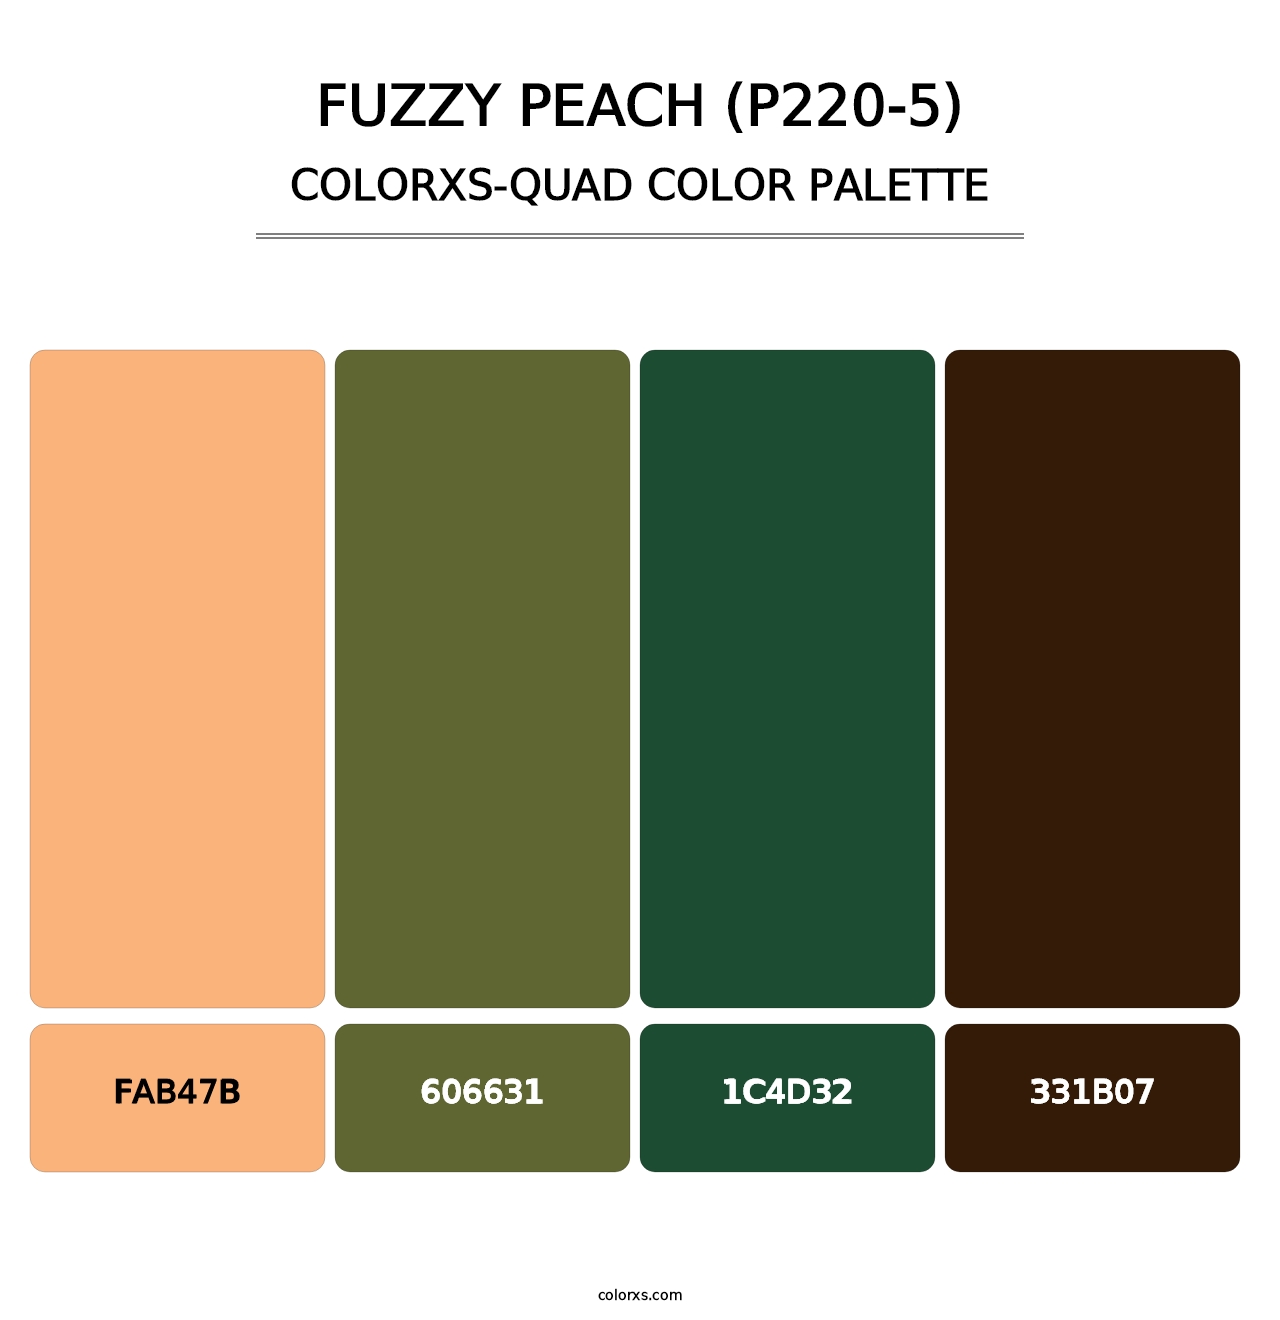 Fuzzy Peach (P220-5) - Colorxs Quad Palette